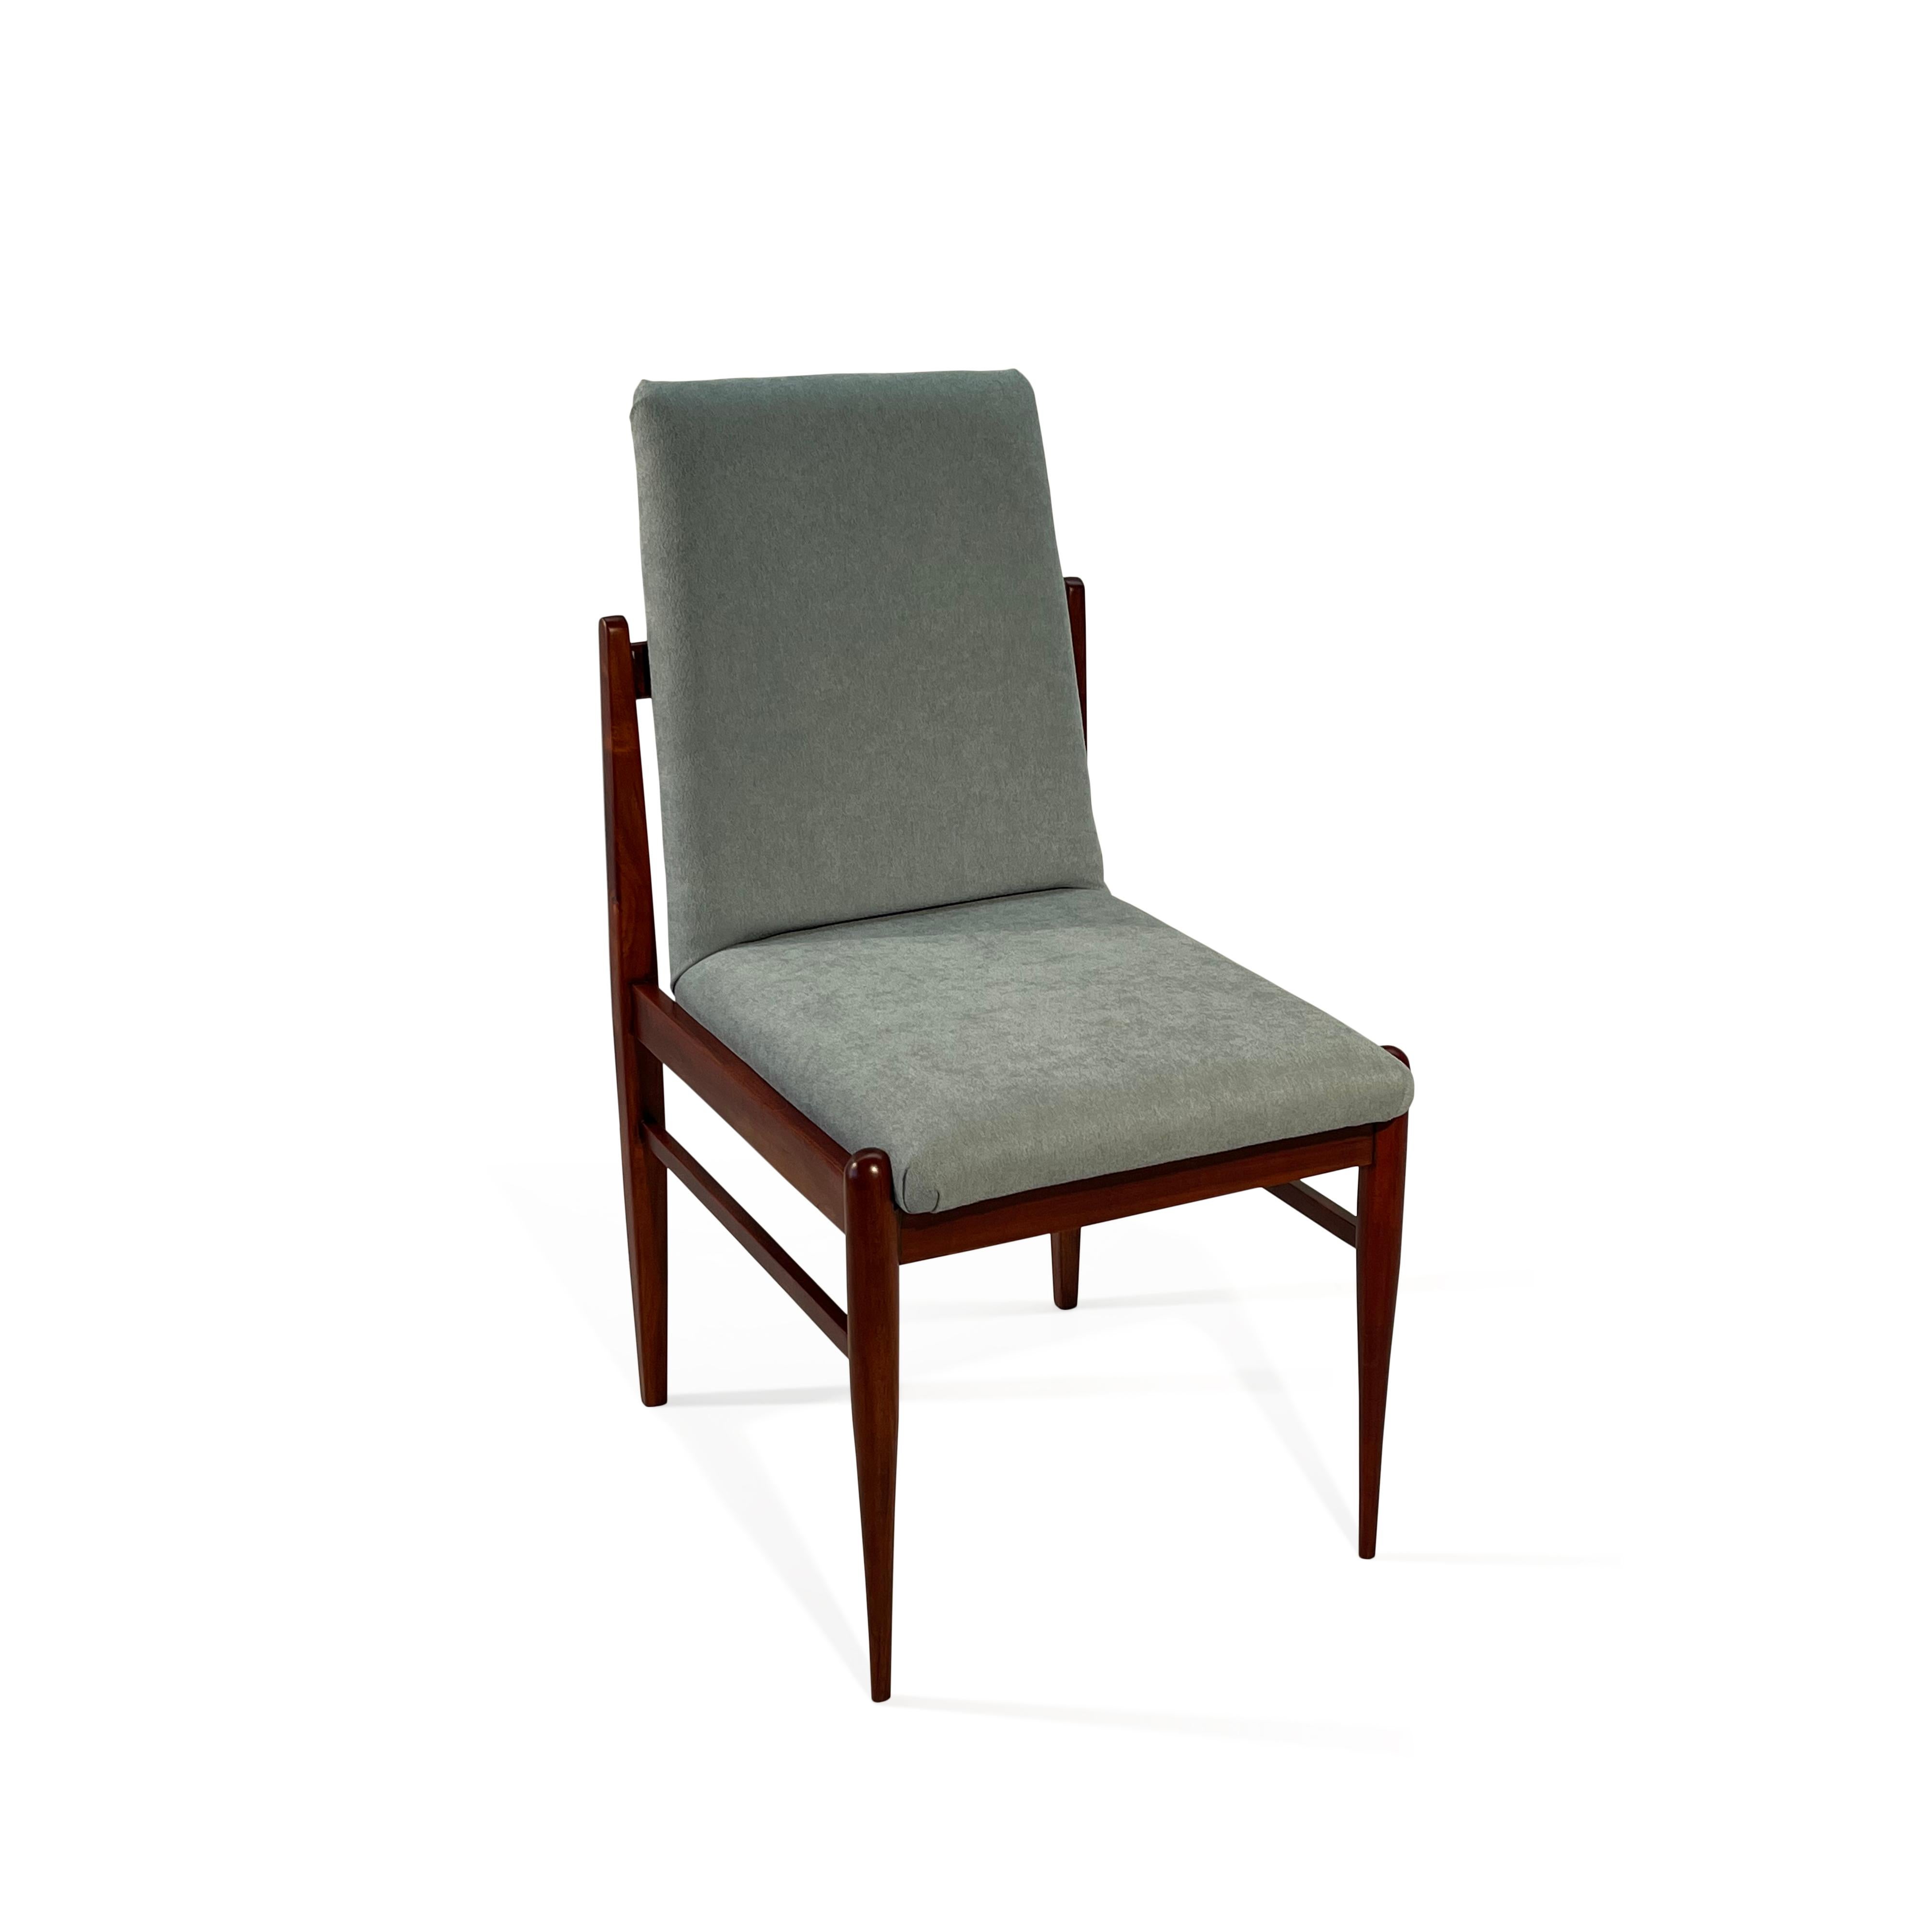 Diese 4 seltenen Esszimmerstühle aus Hartholz wurden in den 1960er Jahren von der brasilianischen Firma Móveis Cimo hergestellt, einem Pionier der brasilianischen Möbelherstellung, der von 1921 bis 1982 existierte.
Móveis Cimo schloss 1982 seine